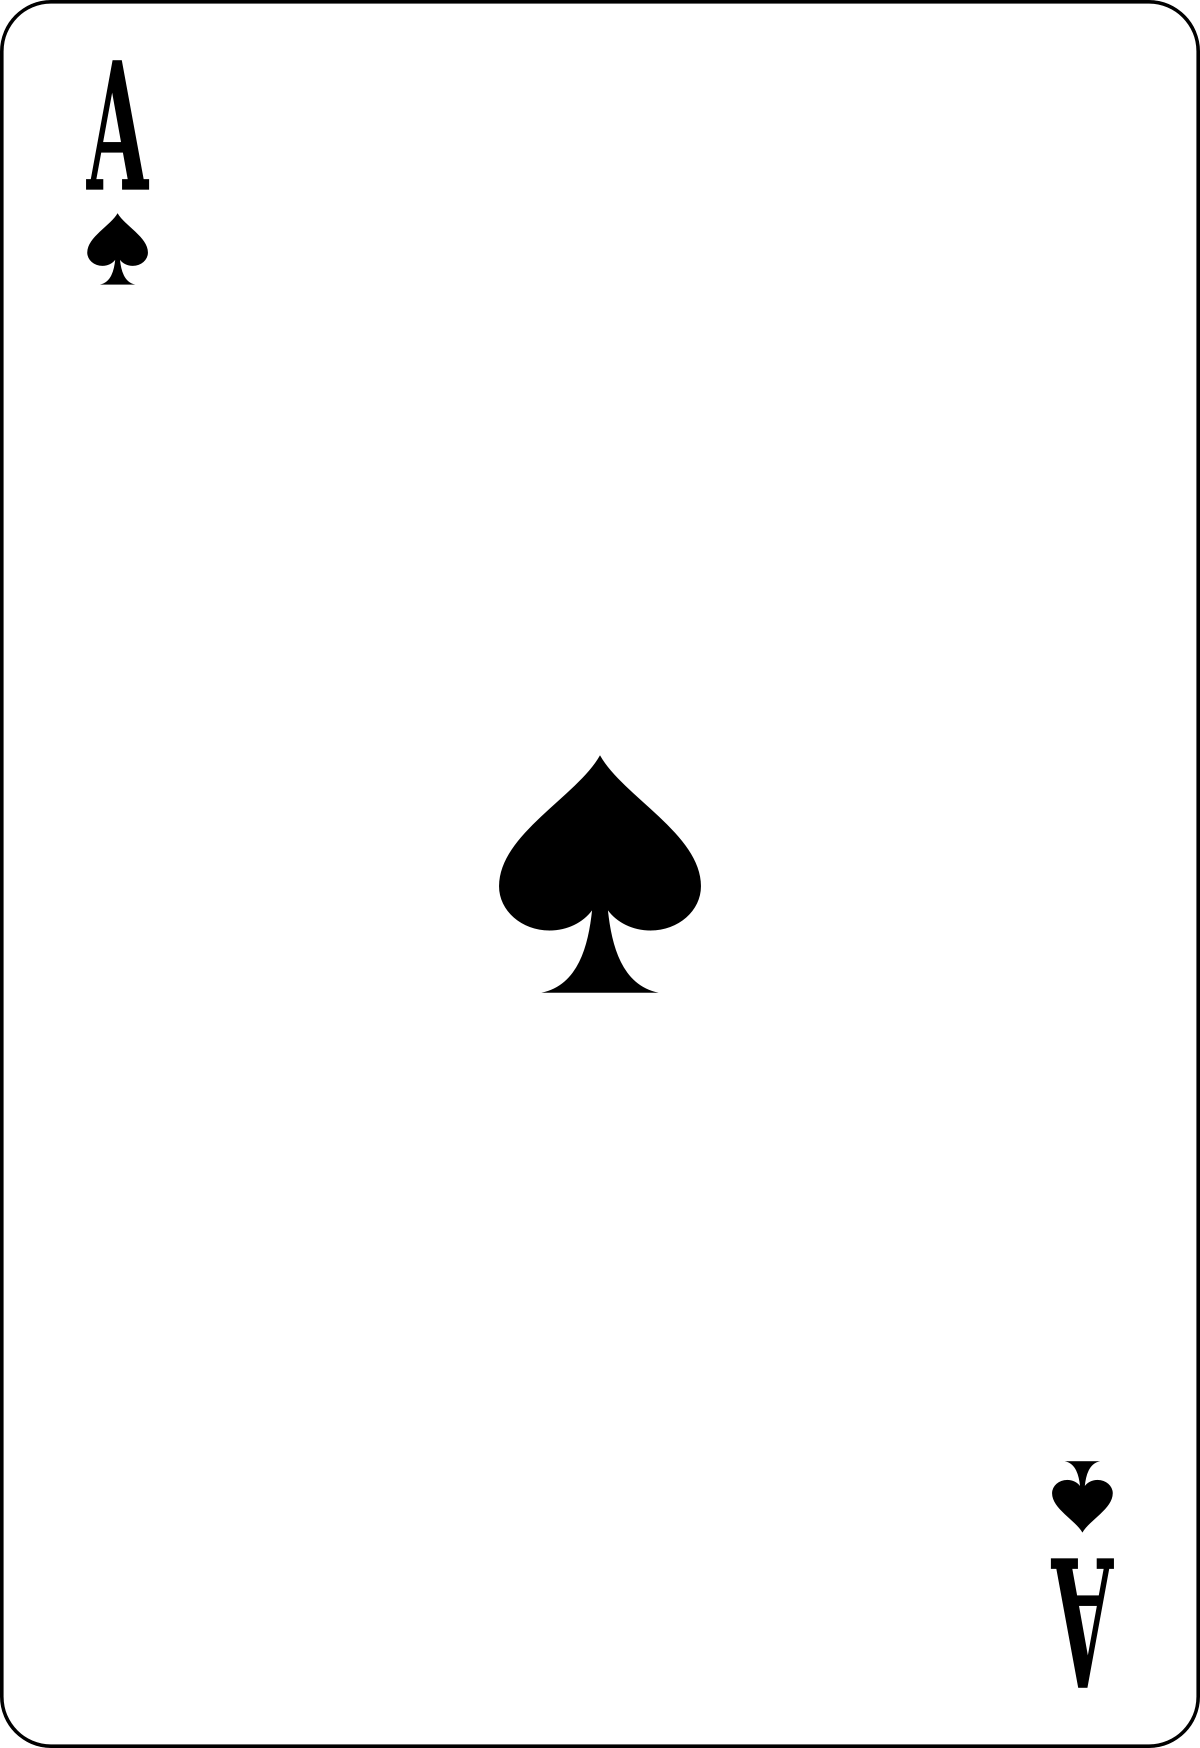 Spade Logo - Ace of spades